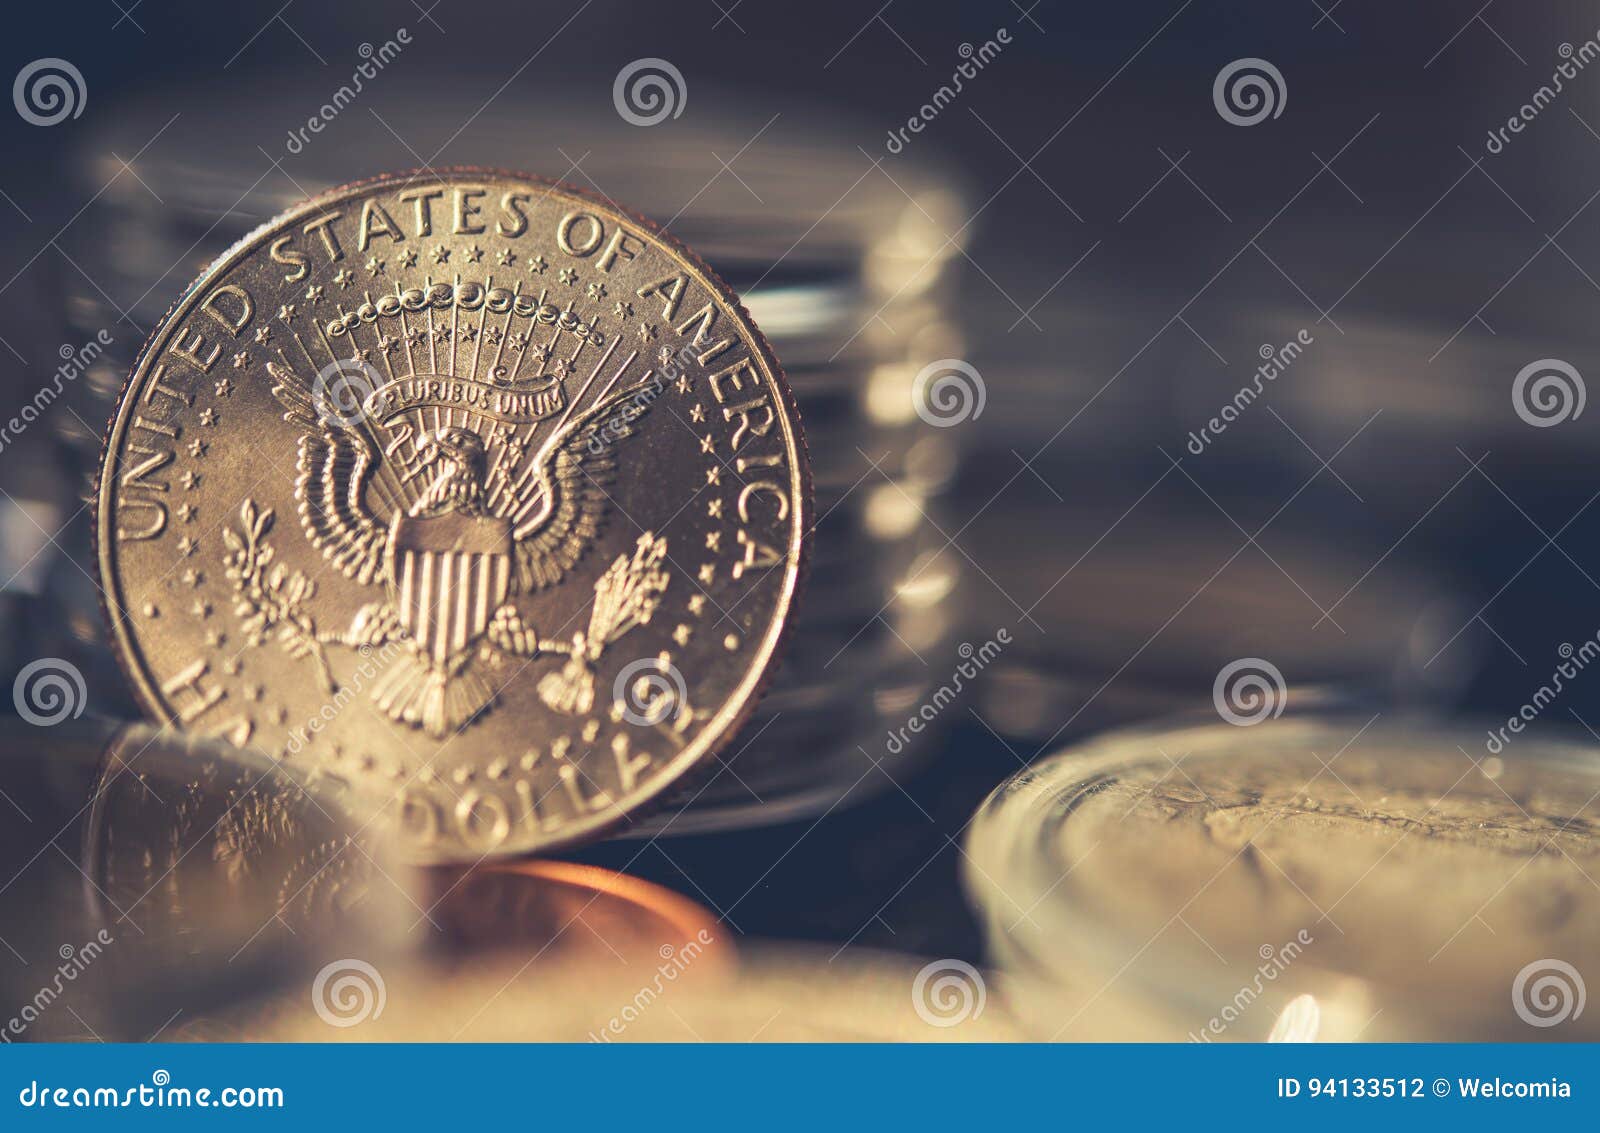 collectible half dollar coin